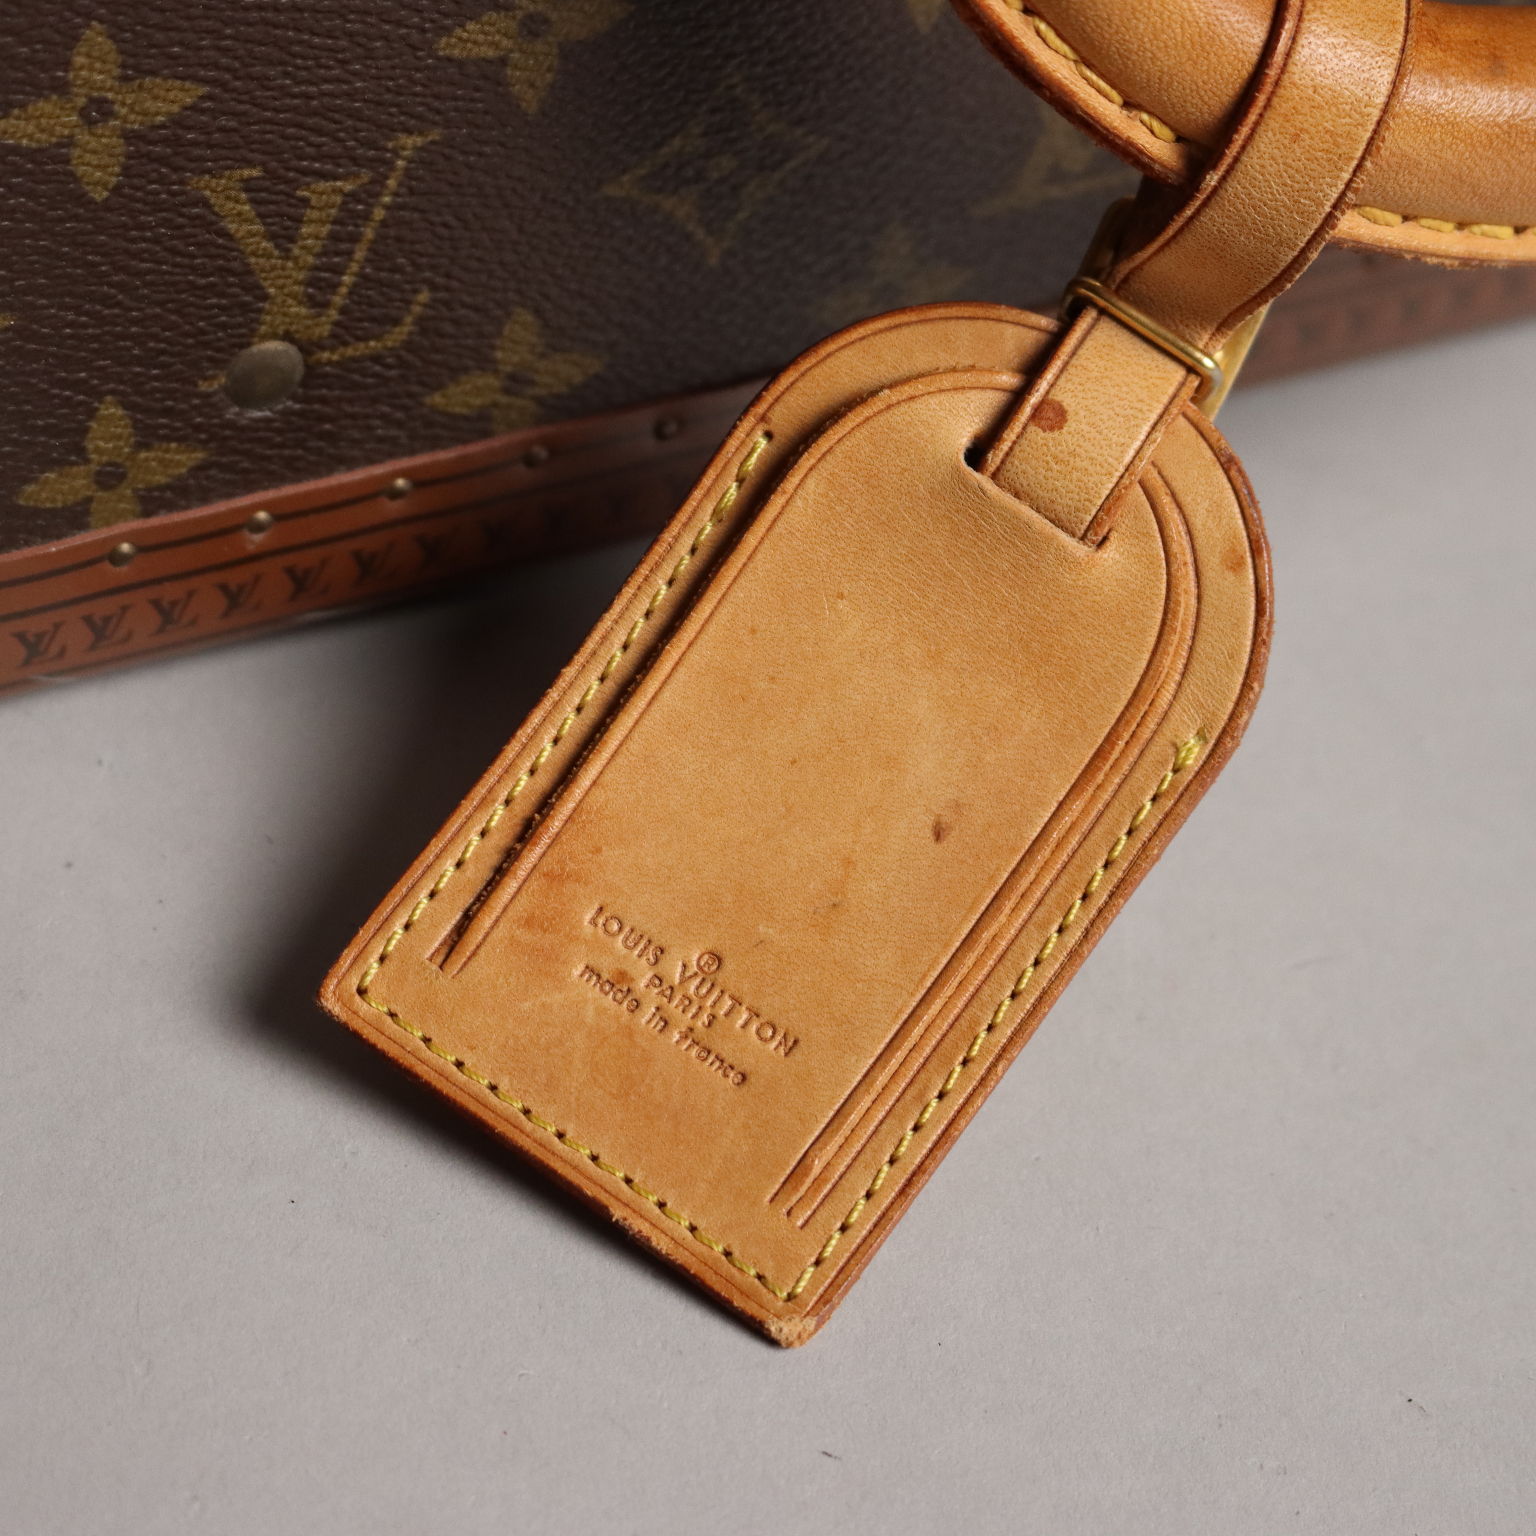 Louis Vuitton Borse di seconda mano: shop online di Louis Vuitton